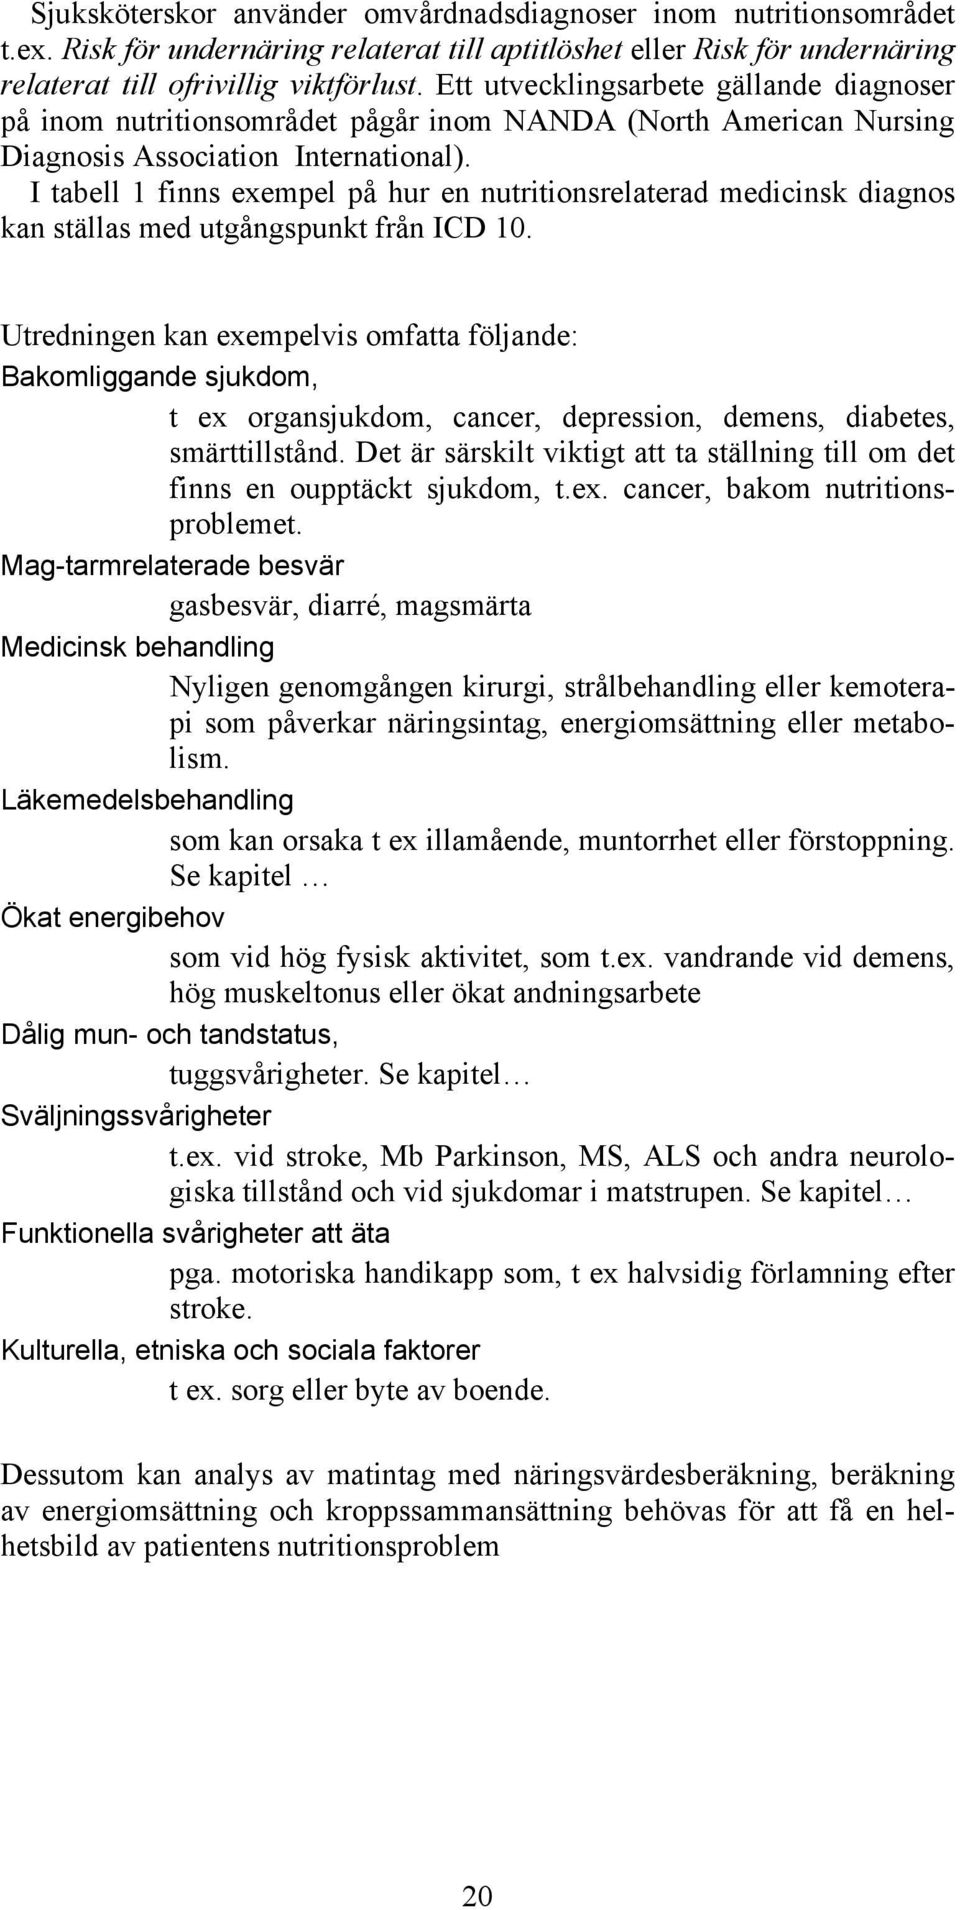 I tabell 1 finns exempel på hur en nutritionsrelaterad medicinsk diagnos kan ställas med utgångspunkt från ICD 10.